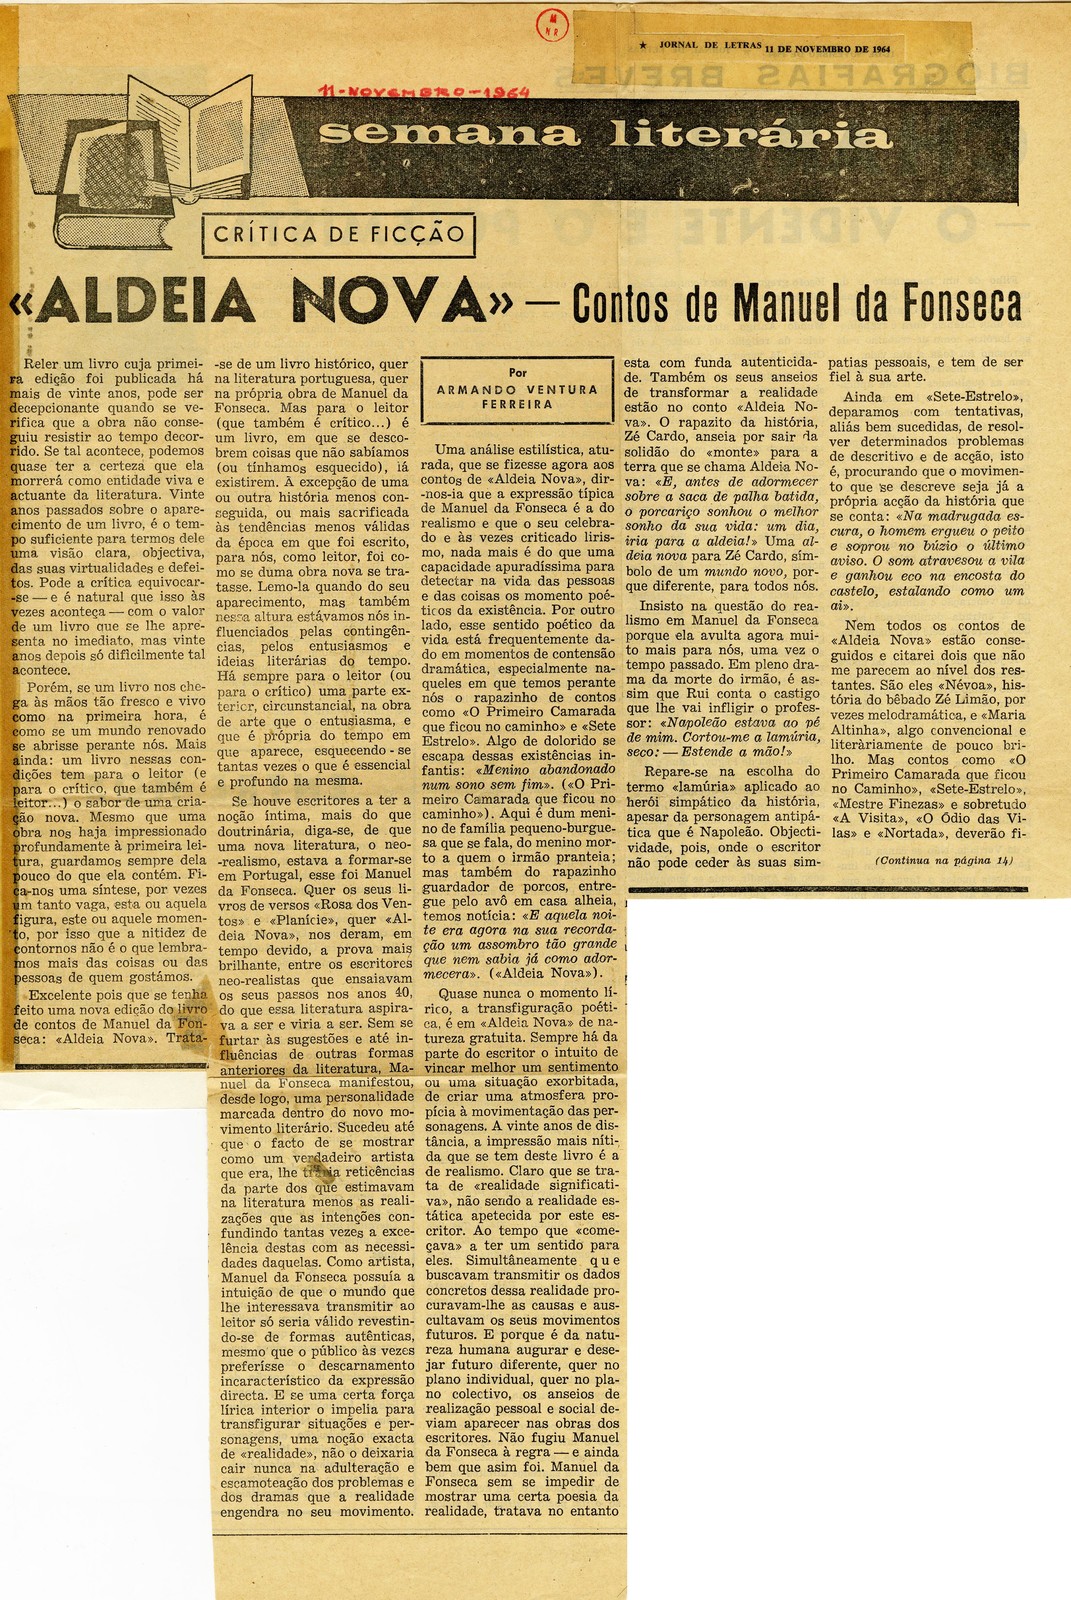 '«Aldeia nova» - Contos de Manuel da Fonseca', por Armando Ventura Ferreira.  In “Jornal de letra...